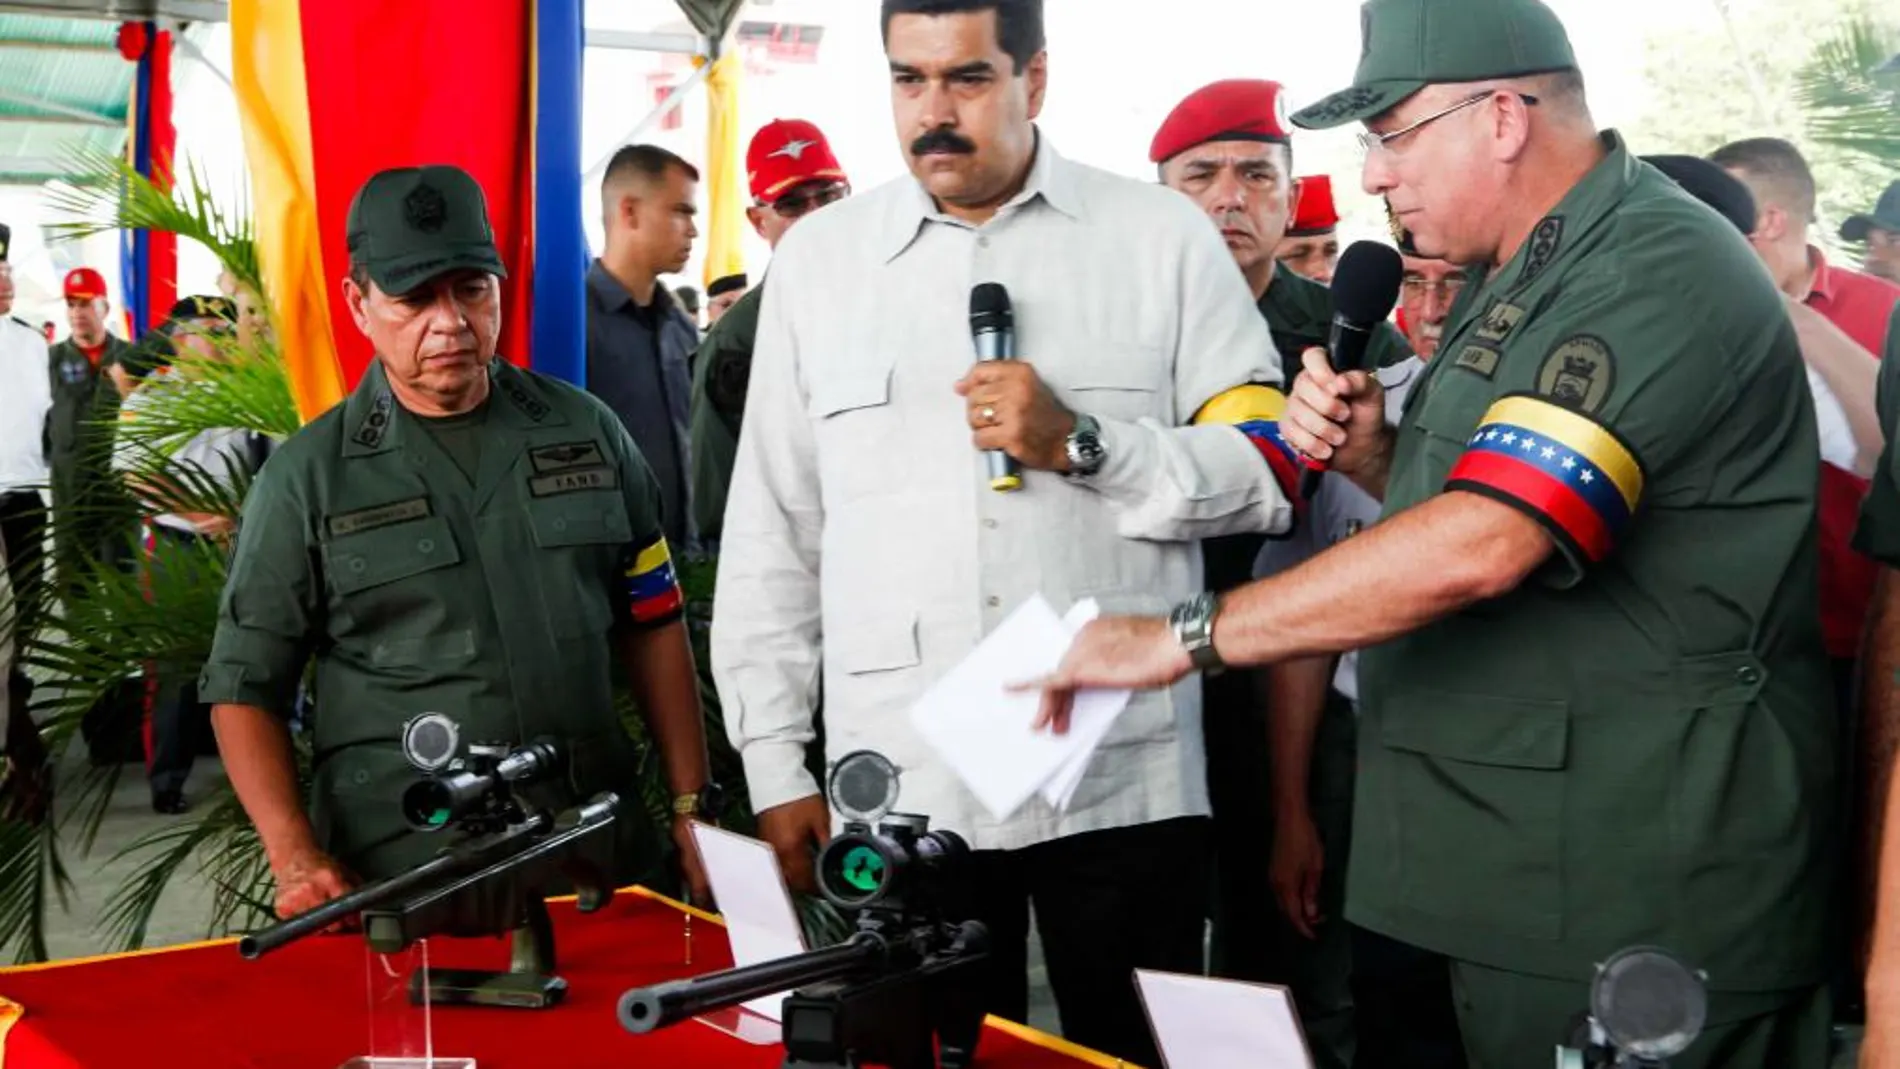 Nicolás Maduro, en el centor, en un acto con militares